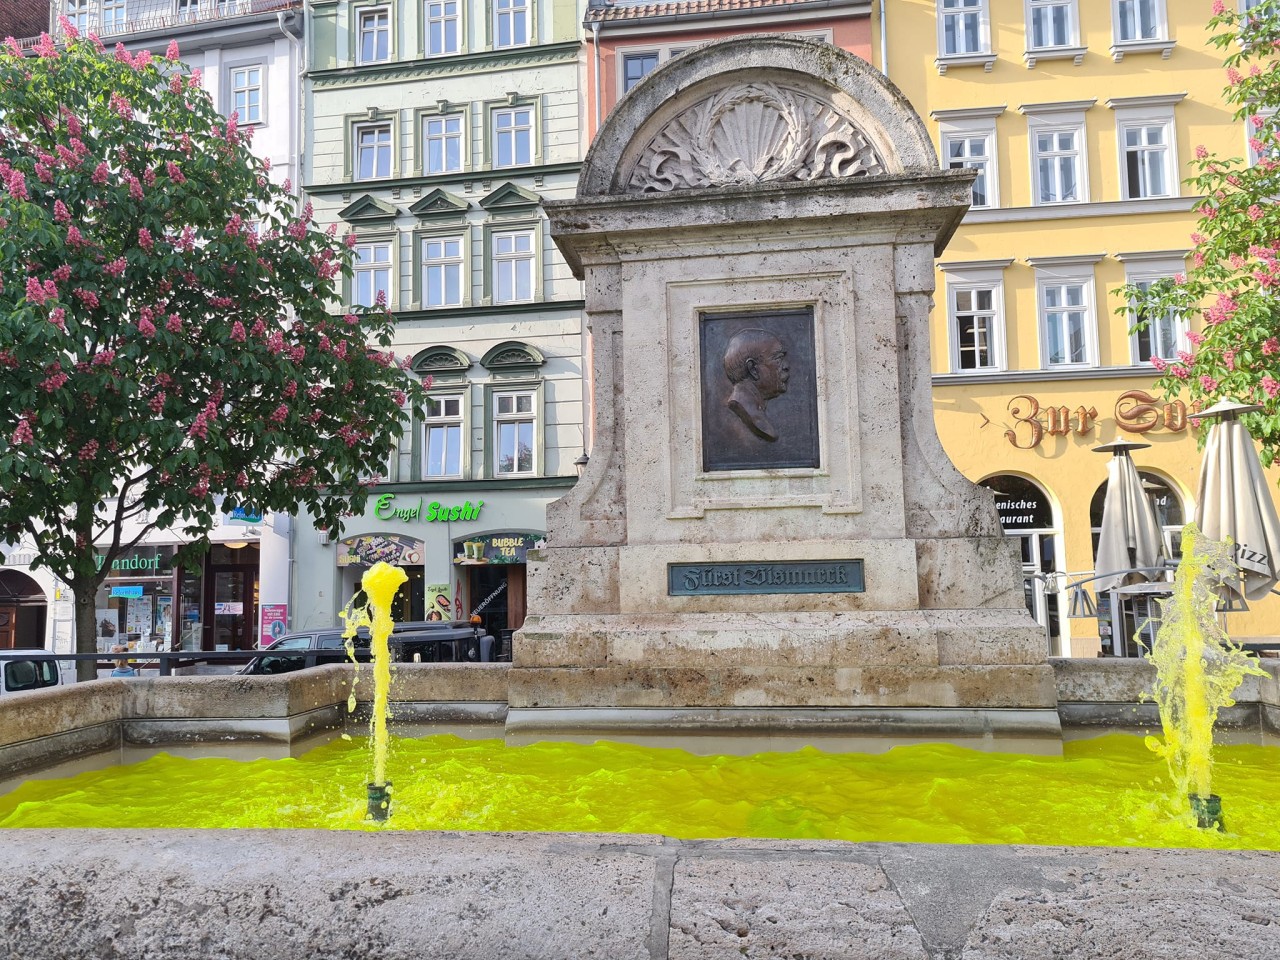 Ziemlich gelb: Die Farbe lässt Facebook-Nutzer in Jena spekulieren. 